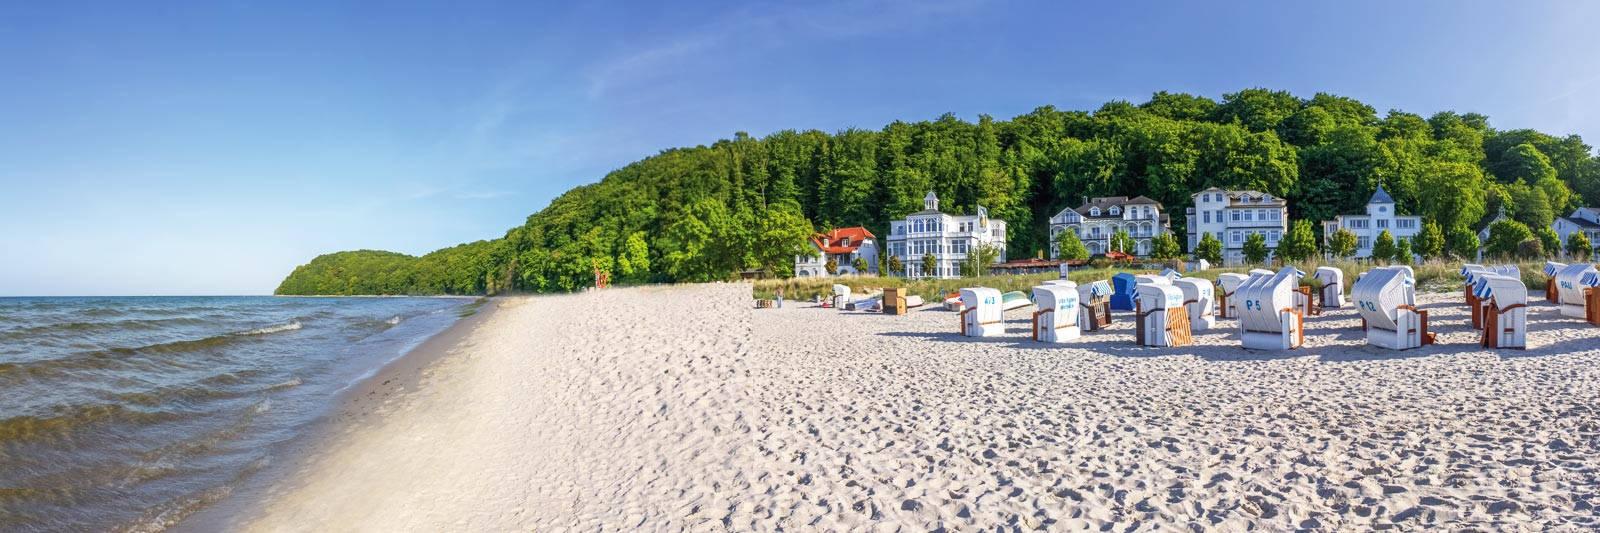 72 Ferienwohnungen und Ferienhäuser in Grünplan - tourist-online.de